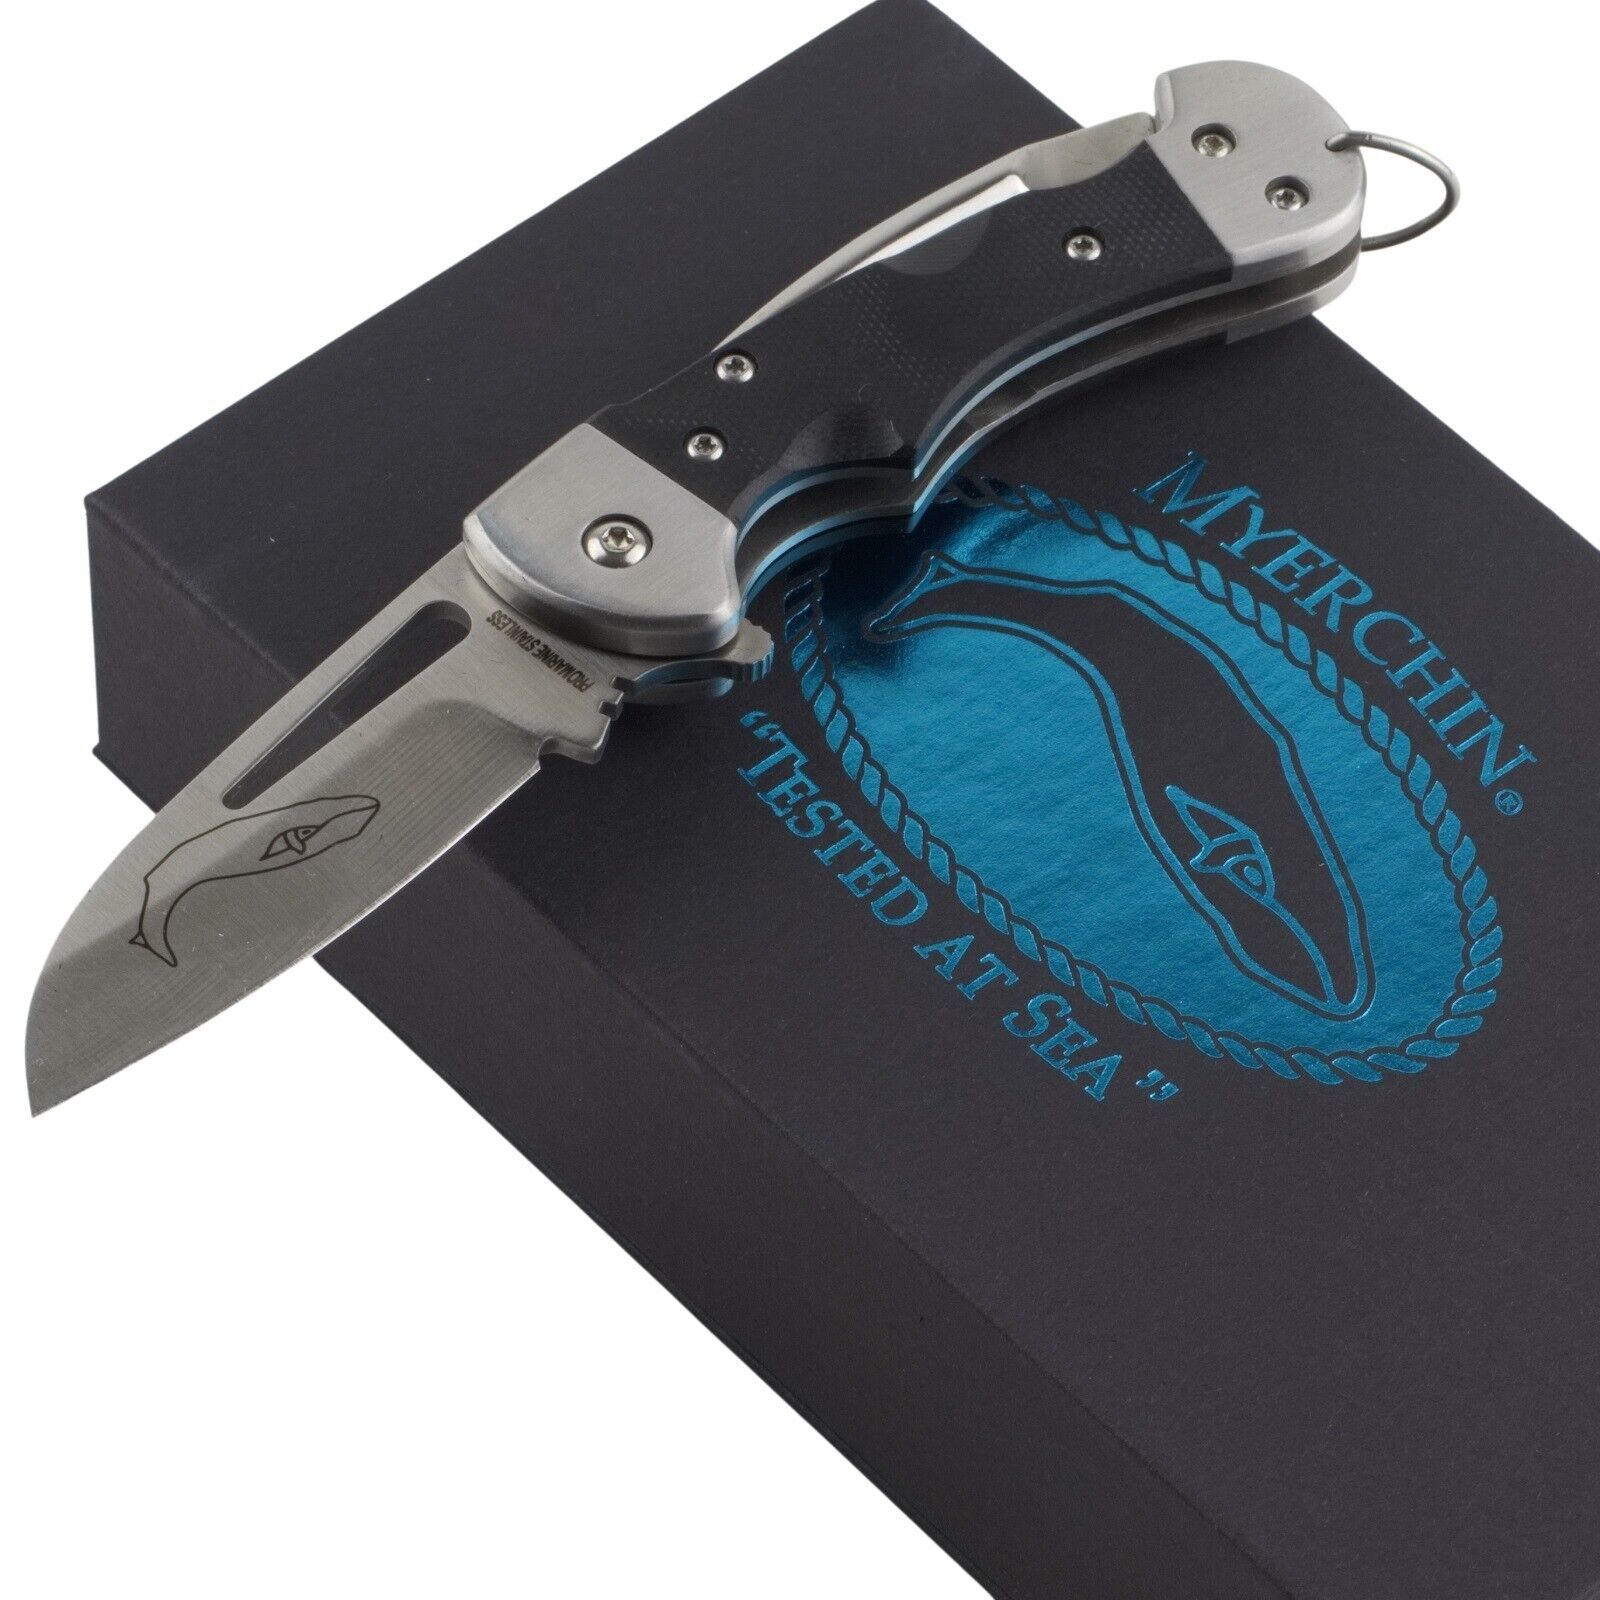 Myerchin Generation 2 Crew Pro G10 Sheepsfoot Marlin Spike Folding Knife